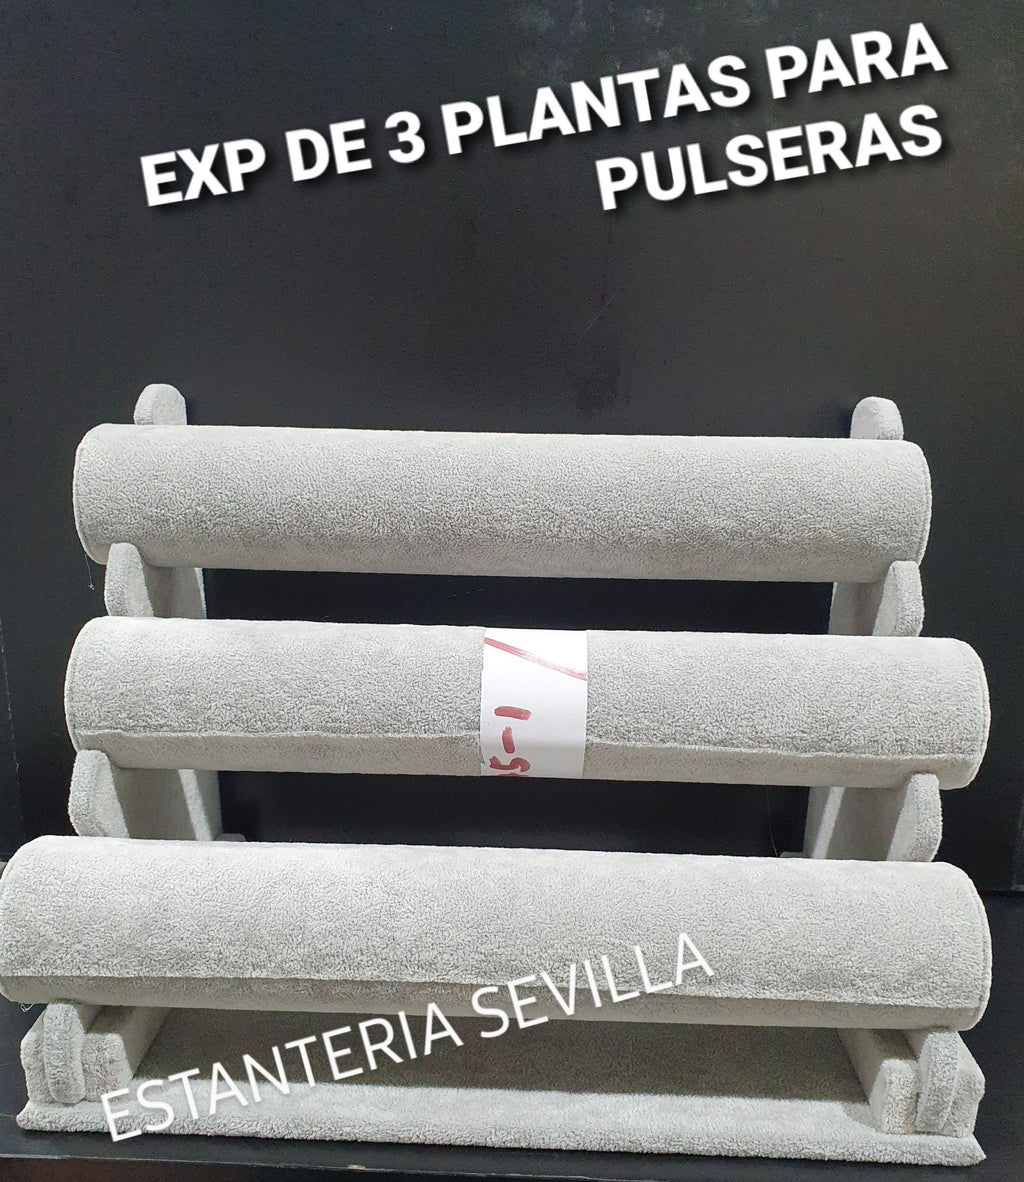 EXPOSITOR PULSERAS 3 PLANTAS Ref 89045- 1